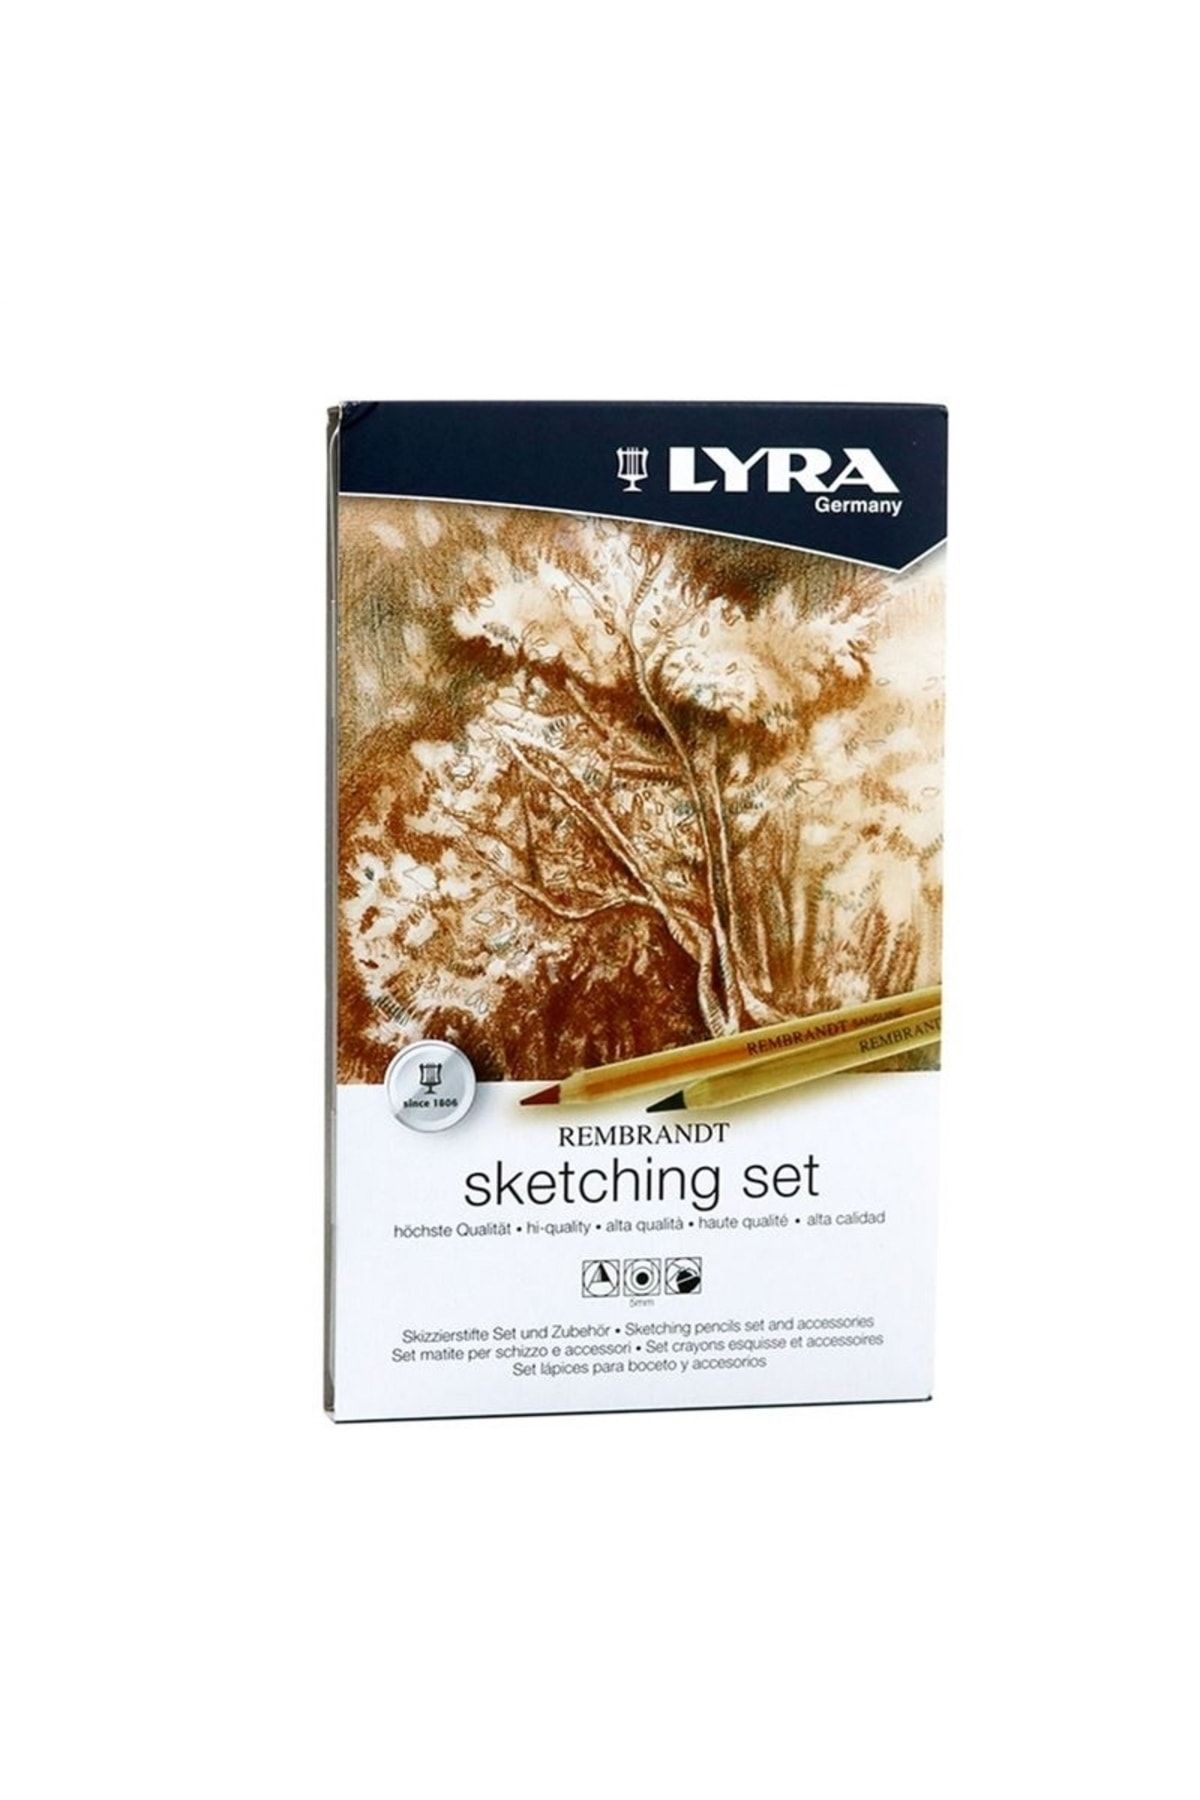 LYRA Rembrandt Sketching Set M11